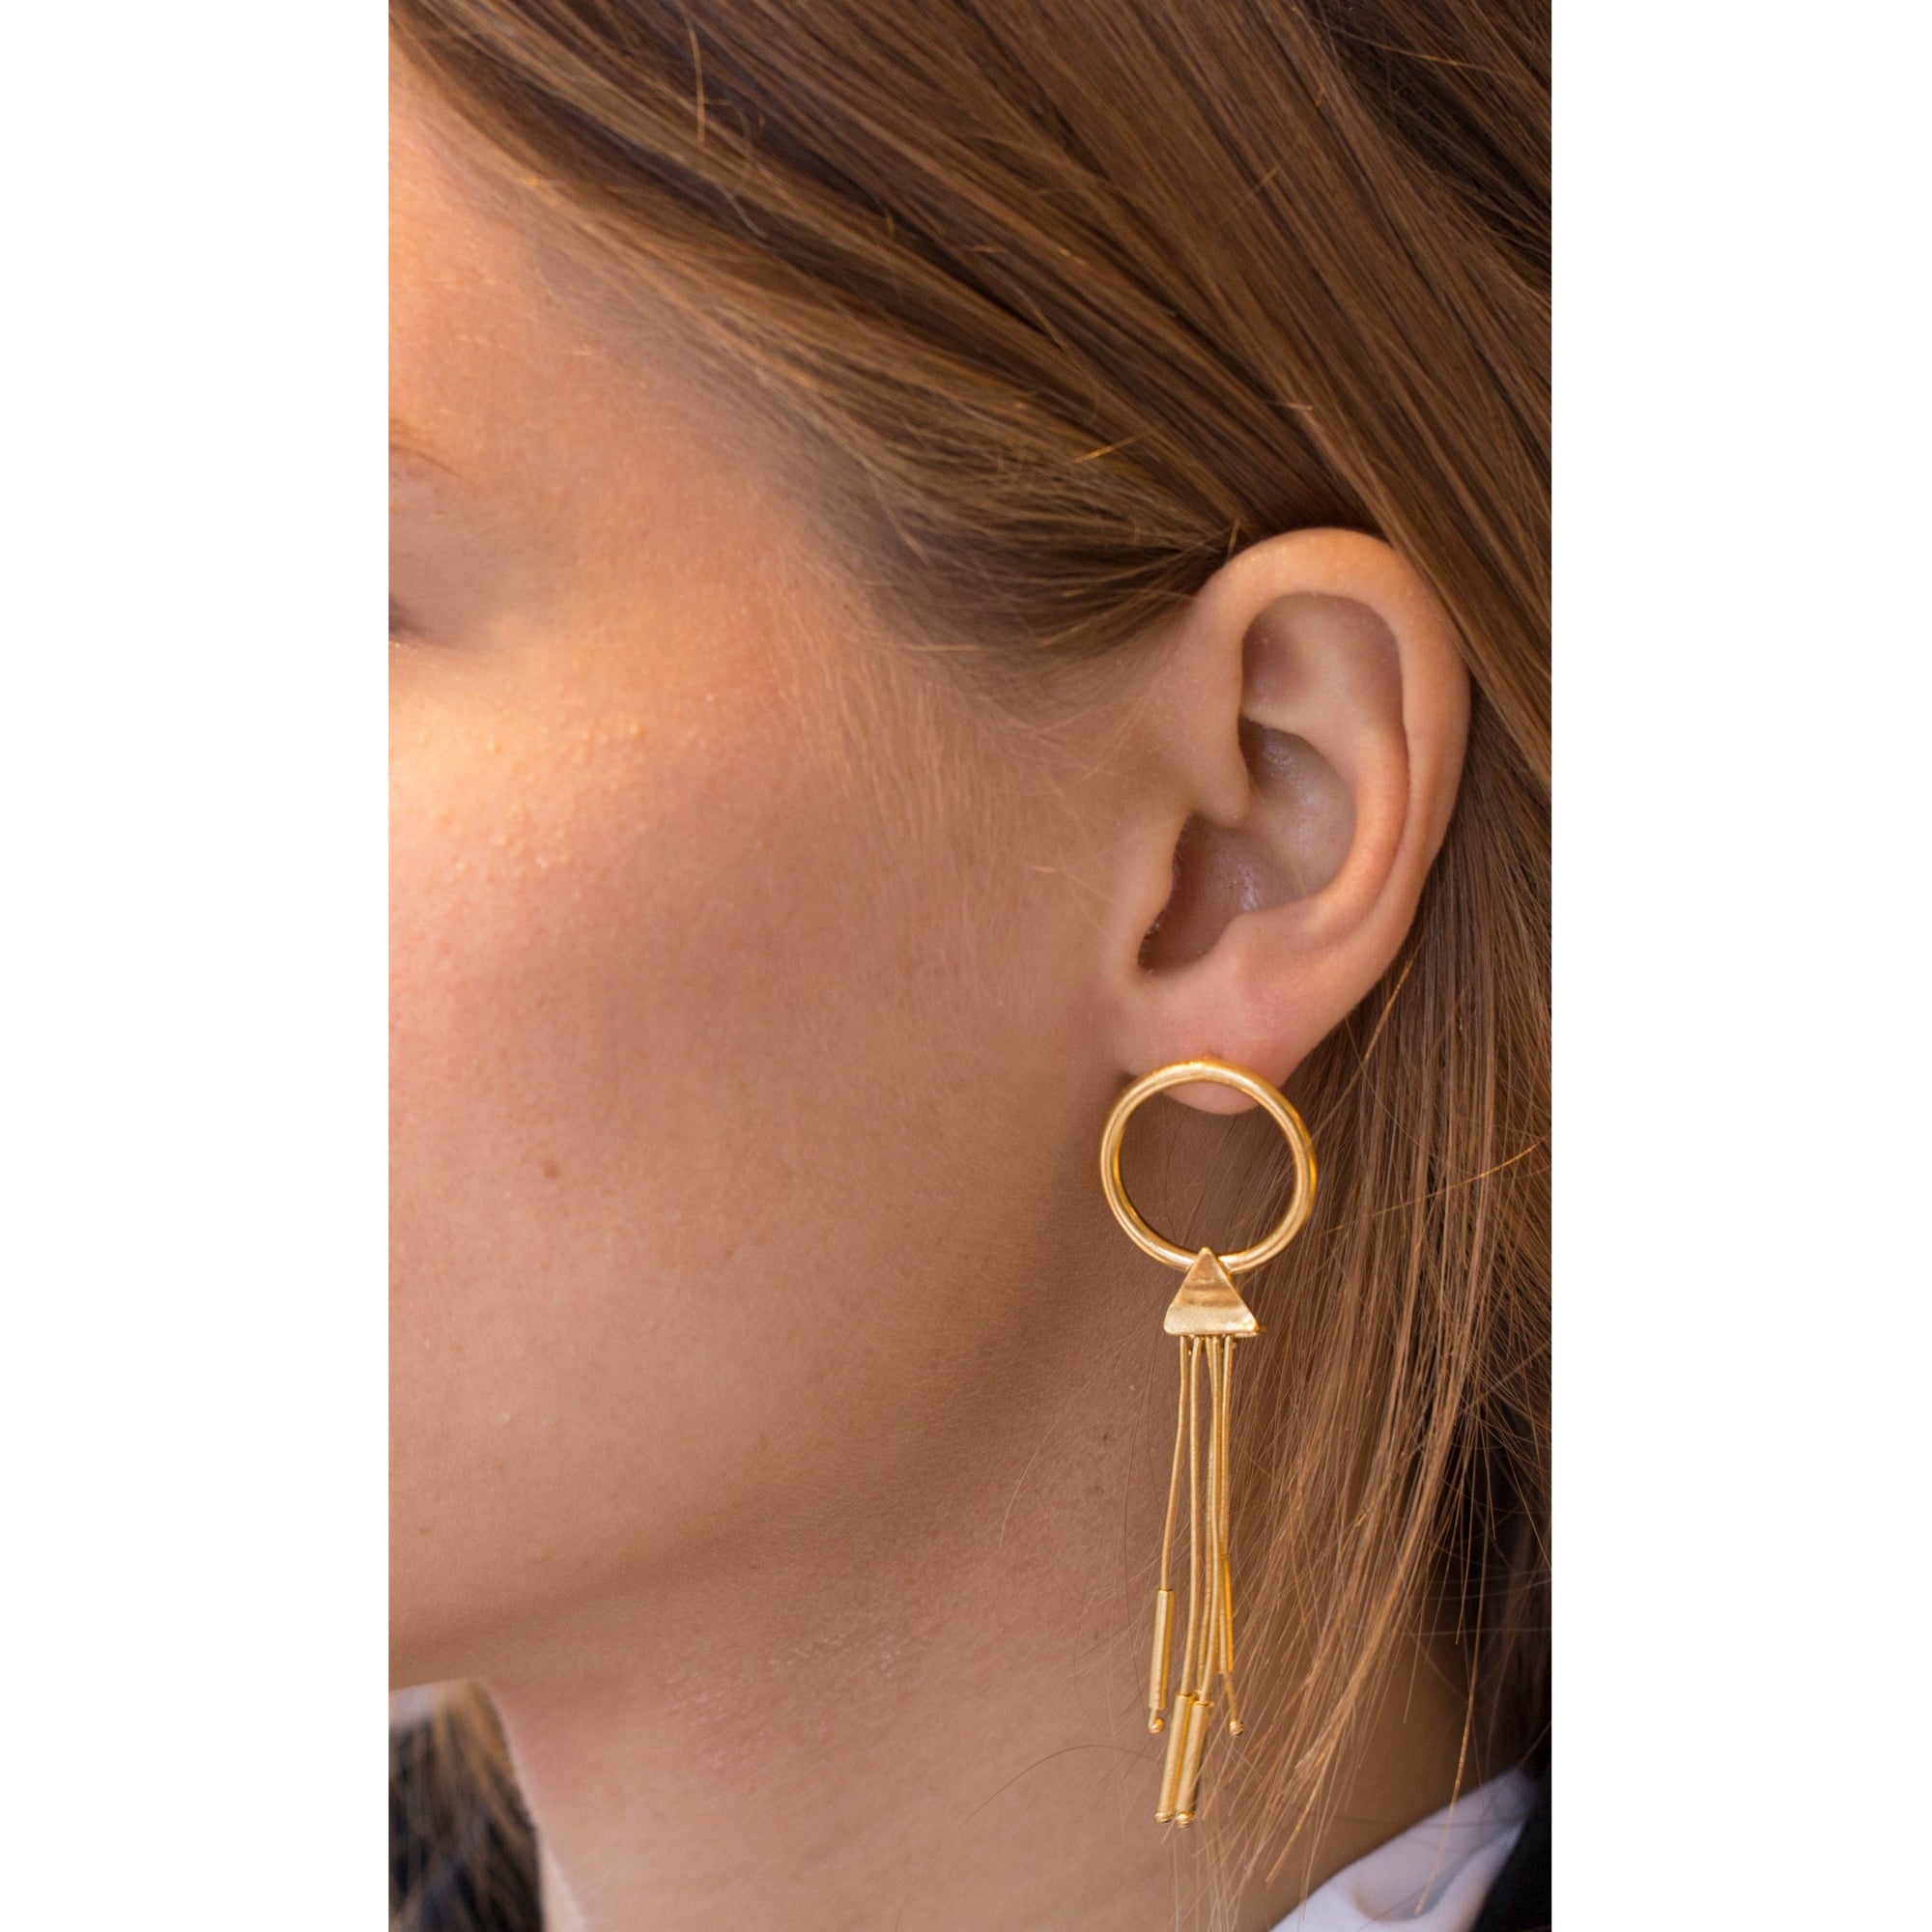 Open Circle Gold Stick Tassel Earrings